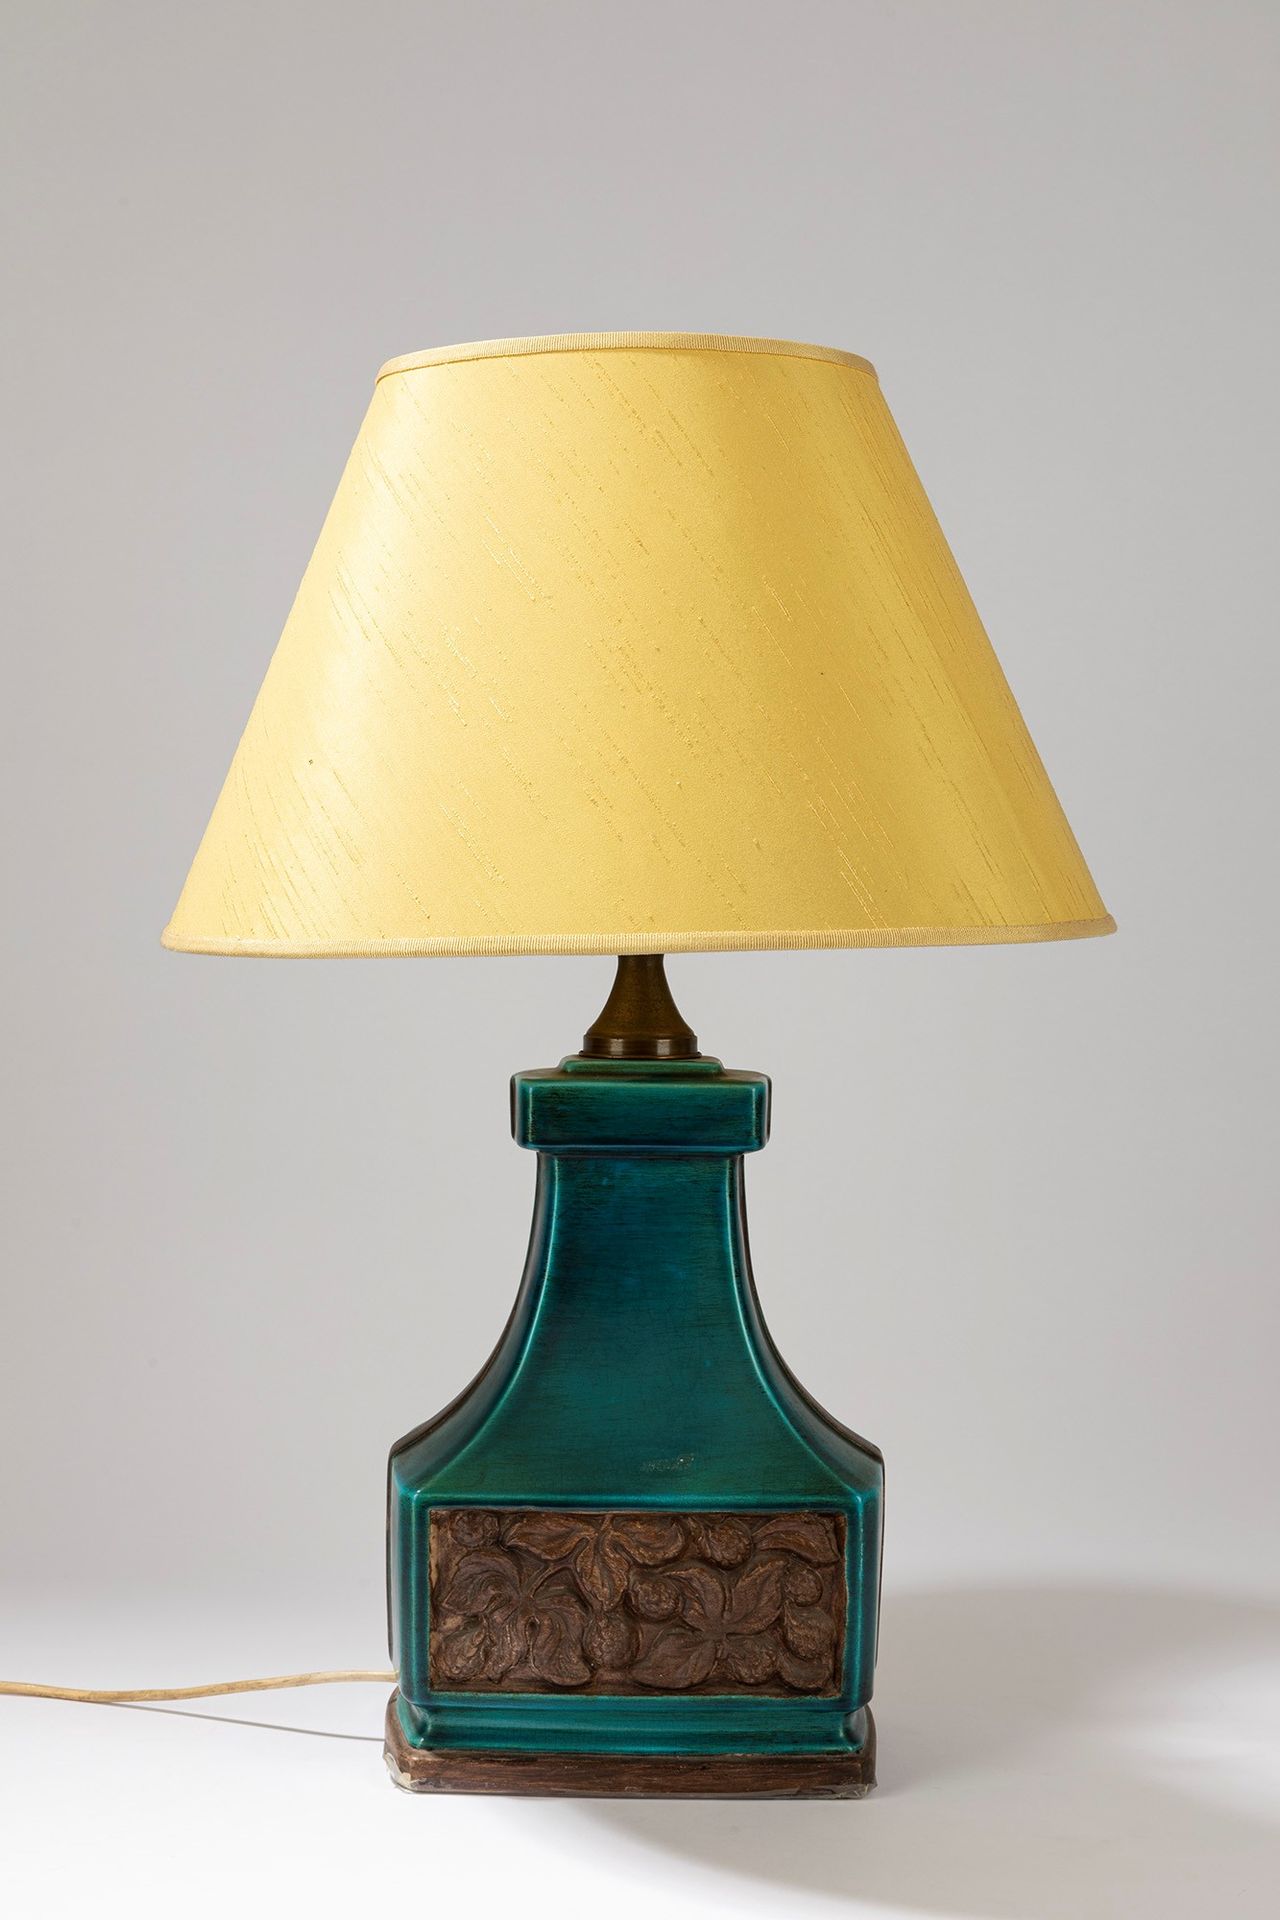 ITALIAN MANUFACTURE Lampe de table, période 50's

cm 24 x 17 x 34 H, H max cm 80&hellip;